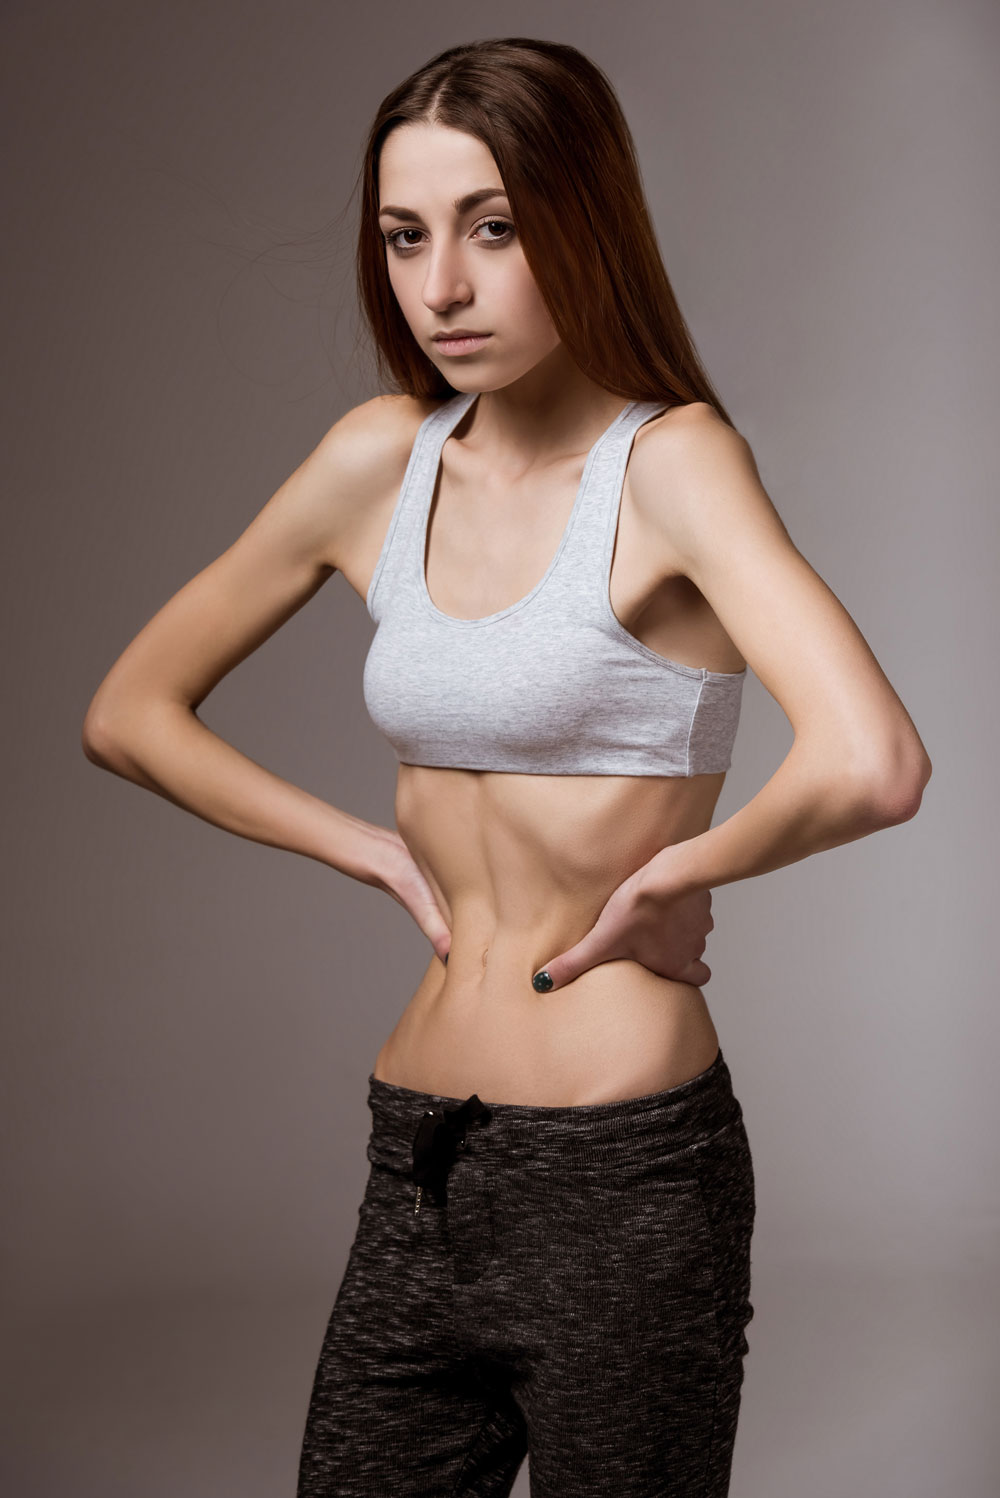 Anoreksiya Nervoza nedir